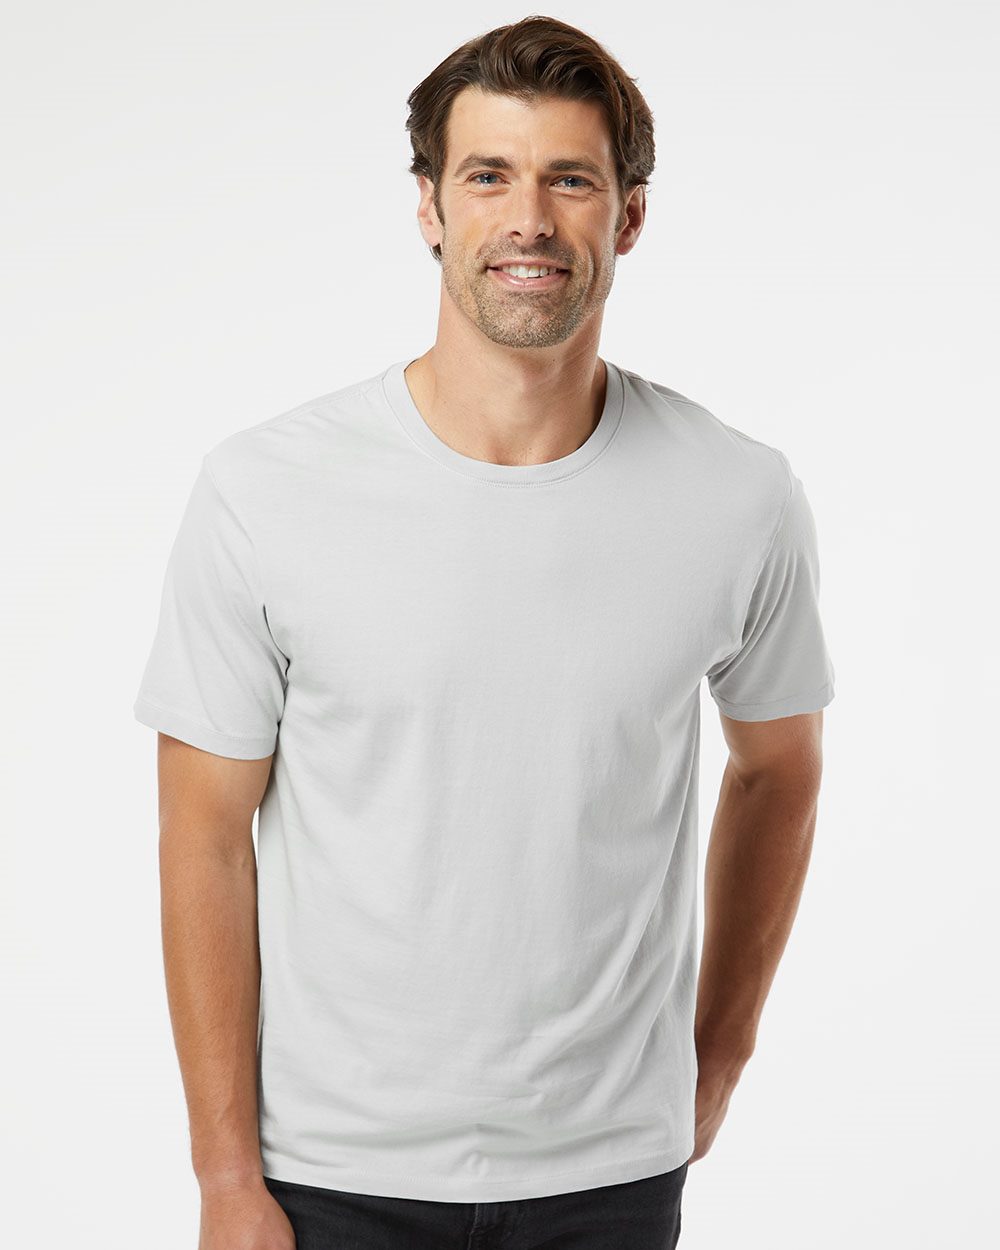 SoftShirts 400 - Organic T-Shirt